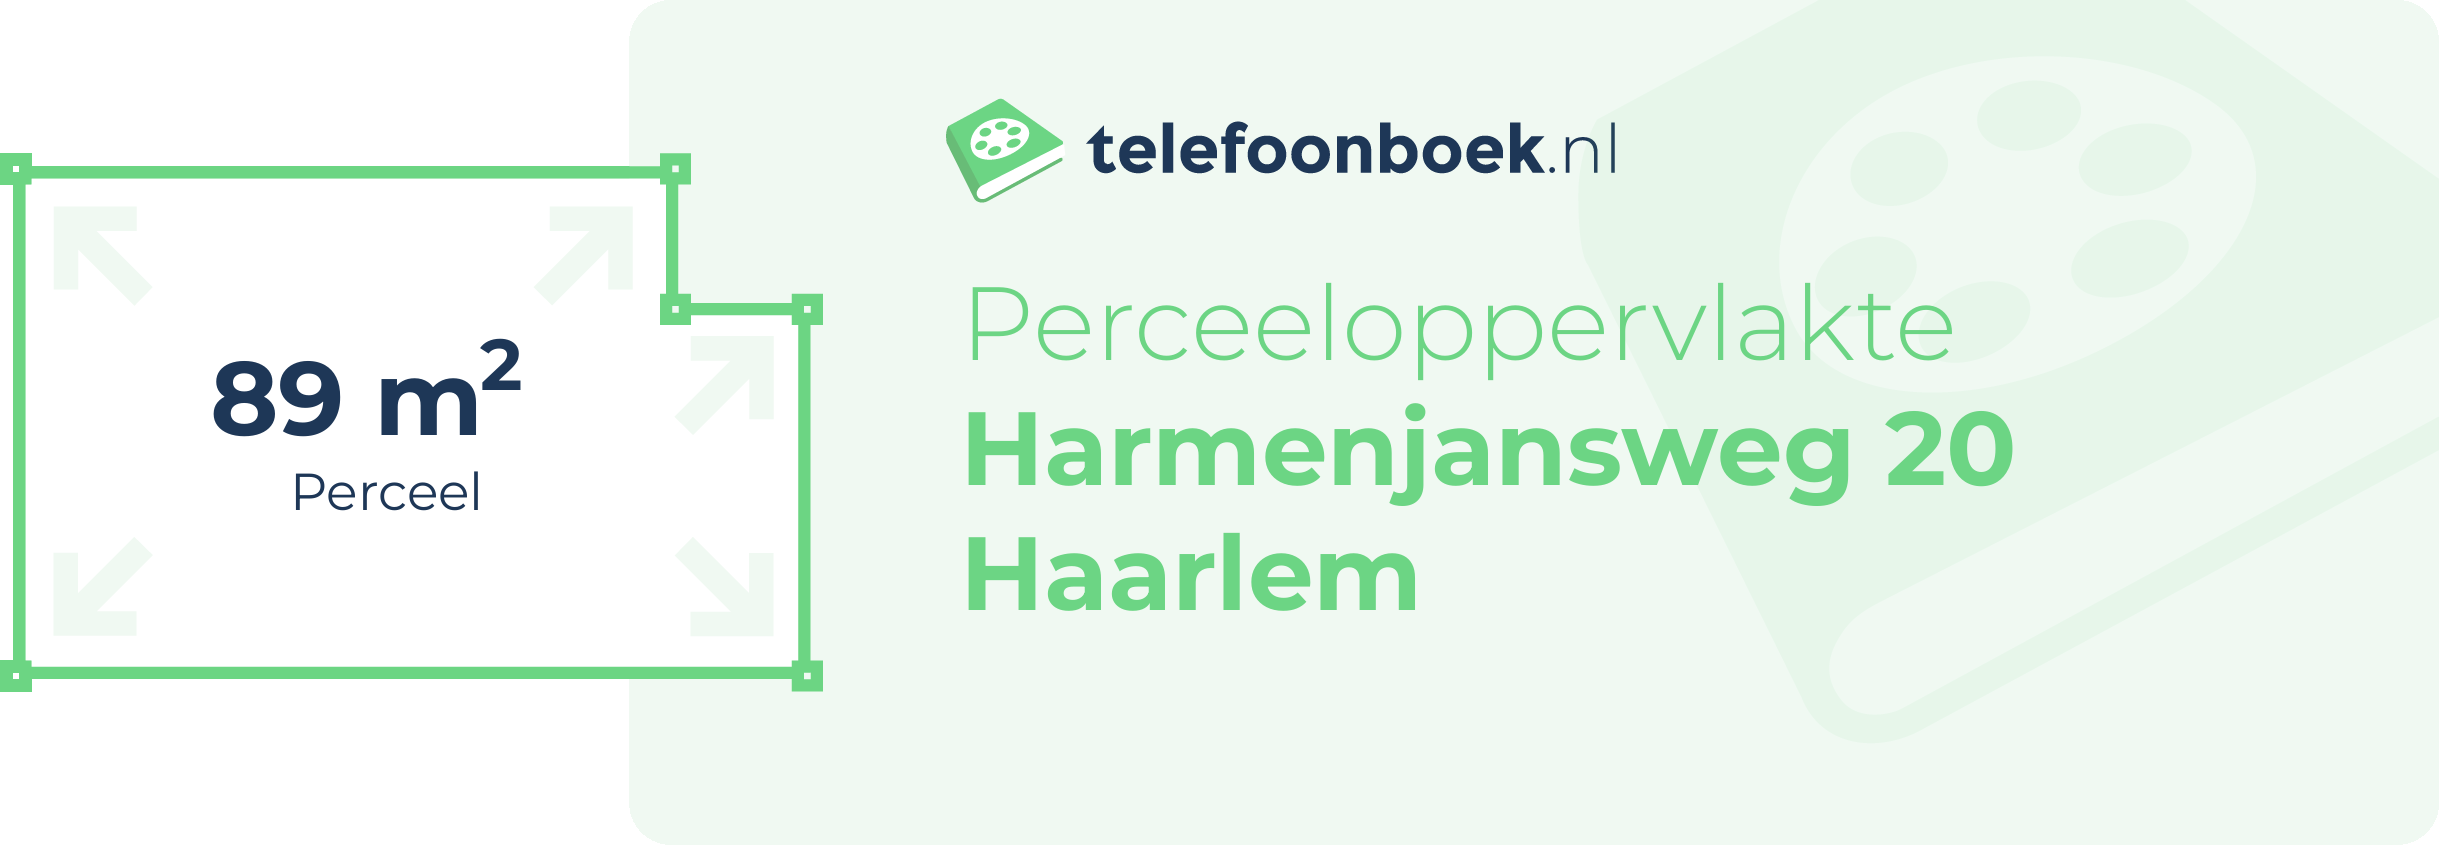 Perceeloppervlakte Harmenjansweg 20 Haarlem